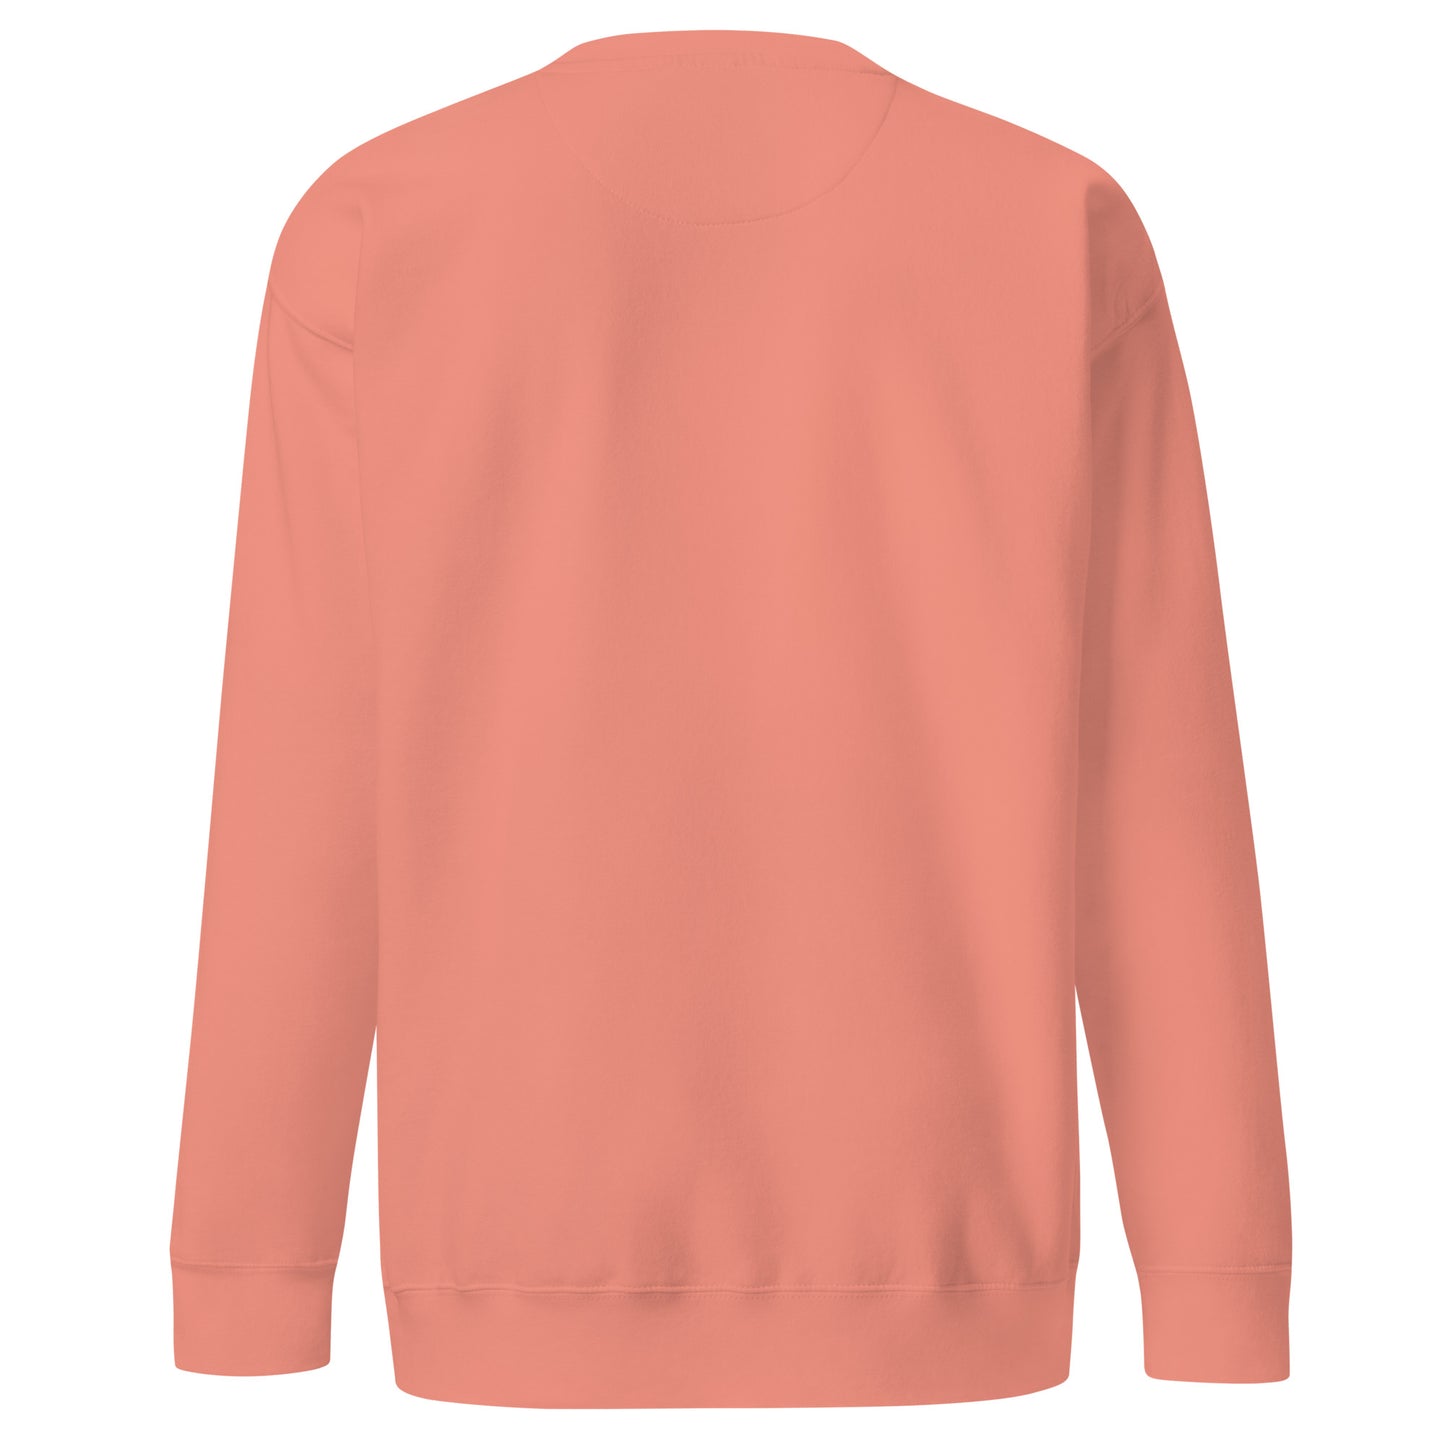 Nomad Unisex Premium Sweatshirt